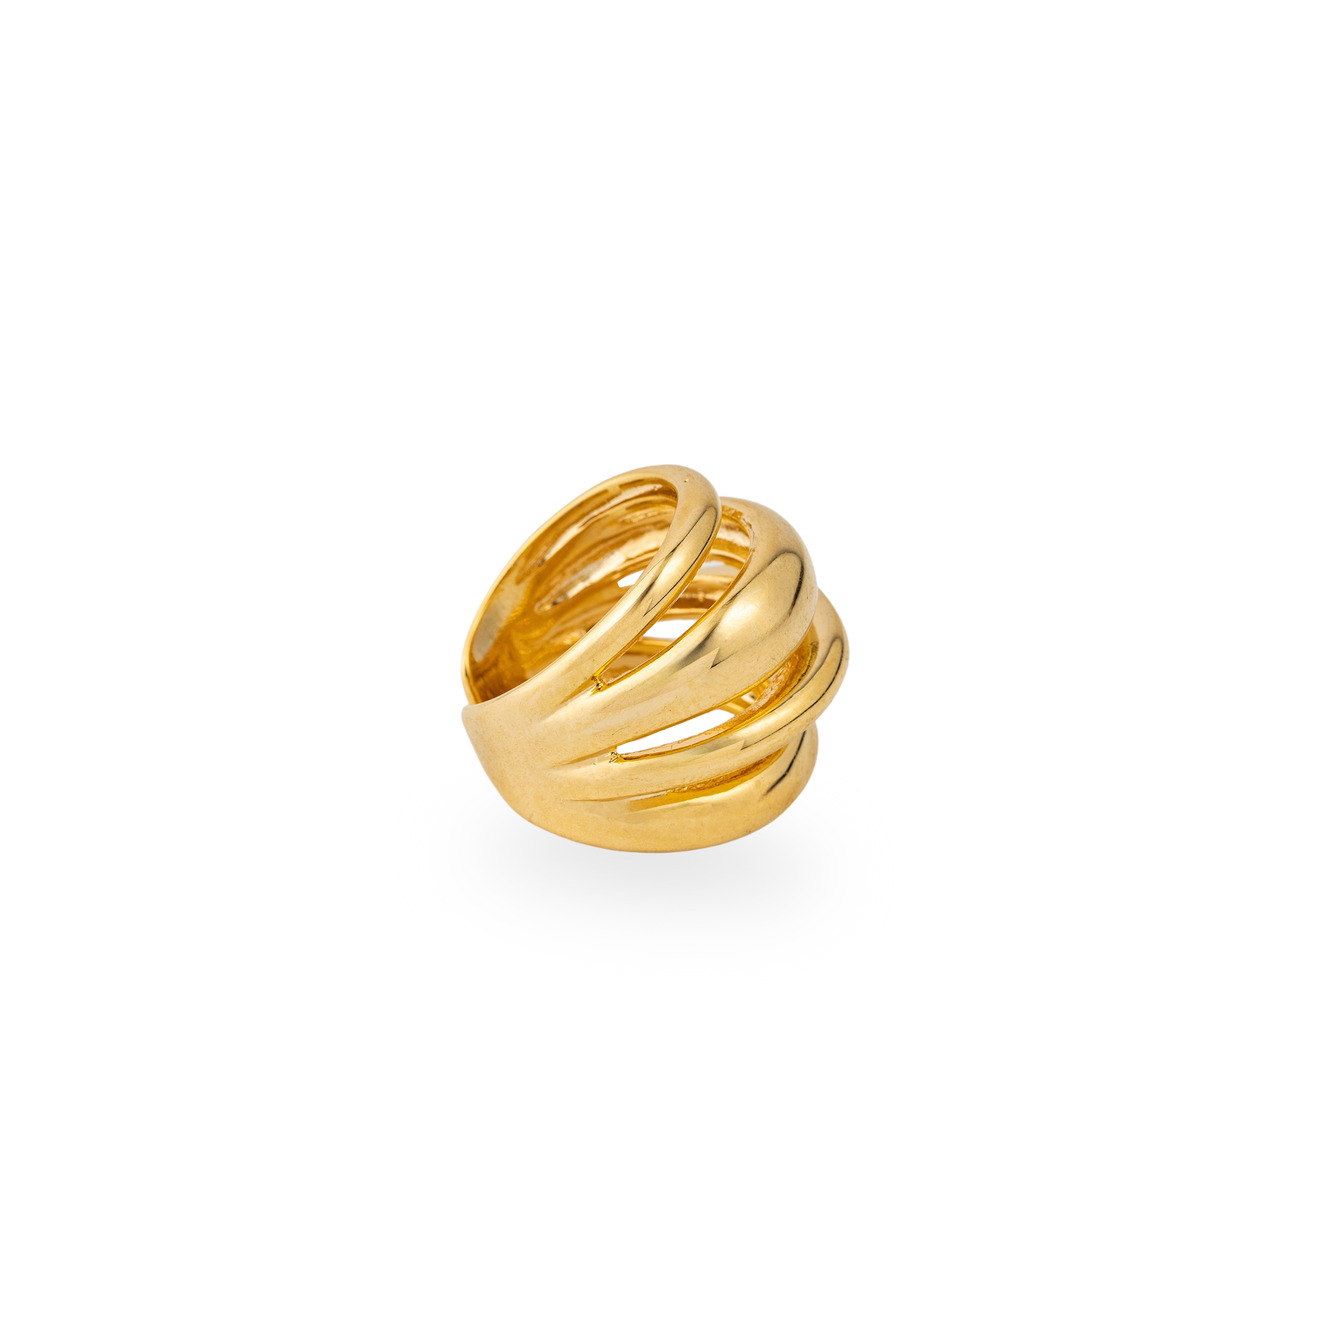 lisa smith золотистое кольцо с буквой s Aloud Золотистое кольцо с 4 полосками